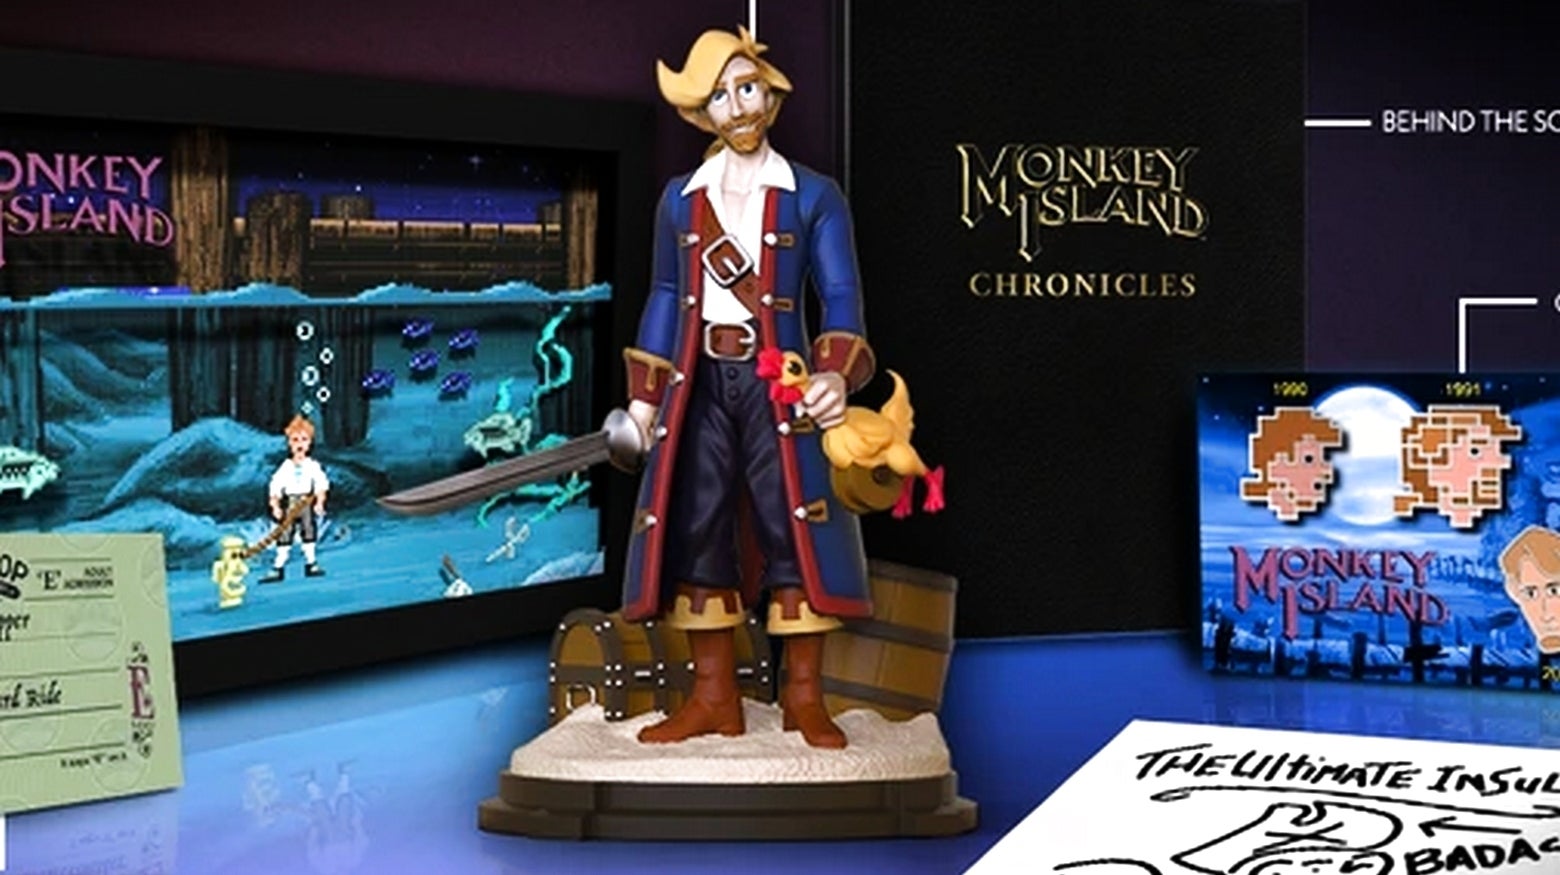 Bilder zu Monkey Island Anthology: Limited Run Games veröffentlicht Sammlerausgabe mit Guybrush-Statue